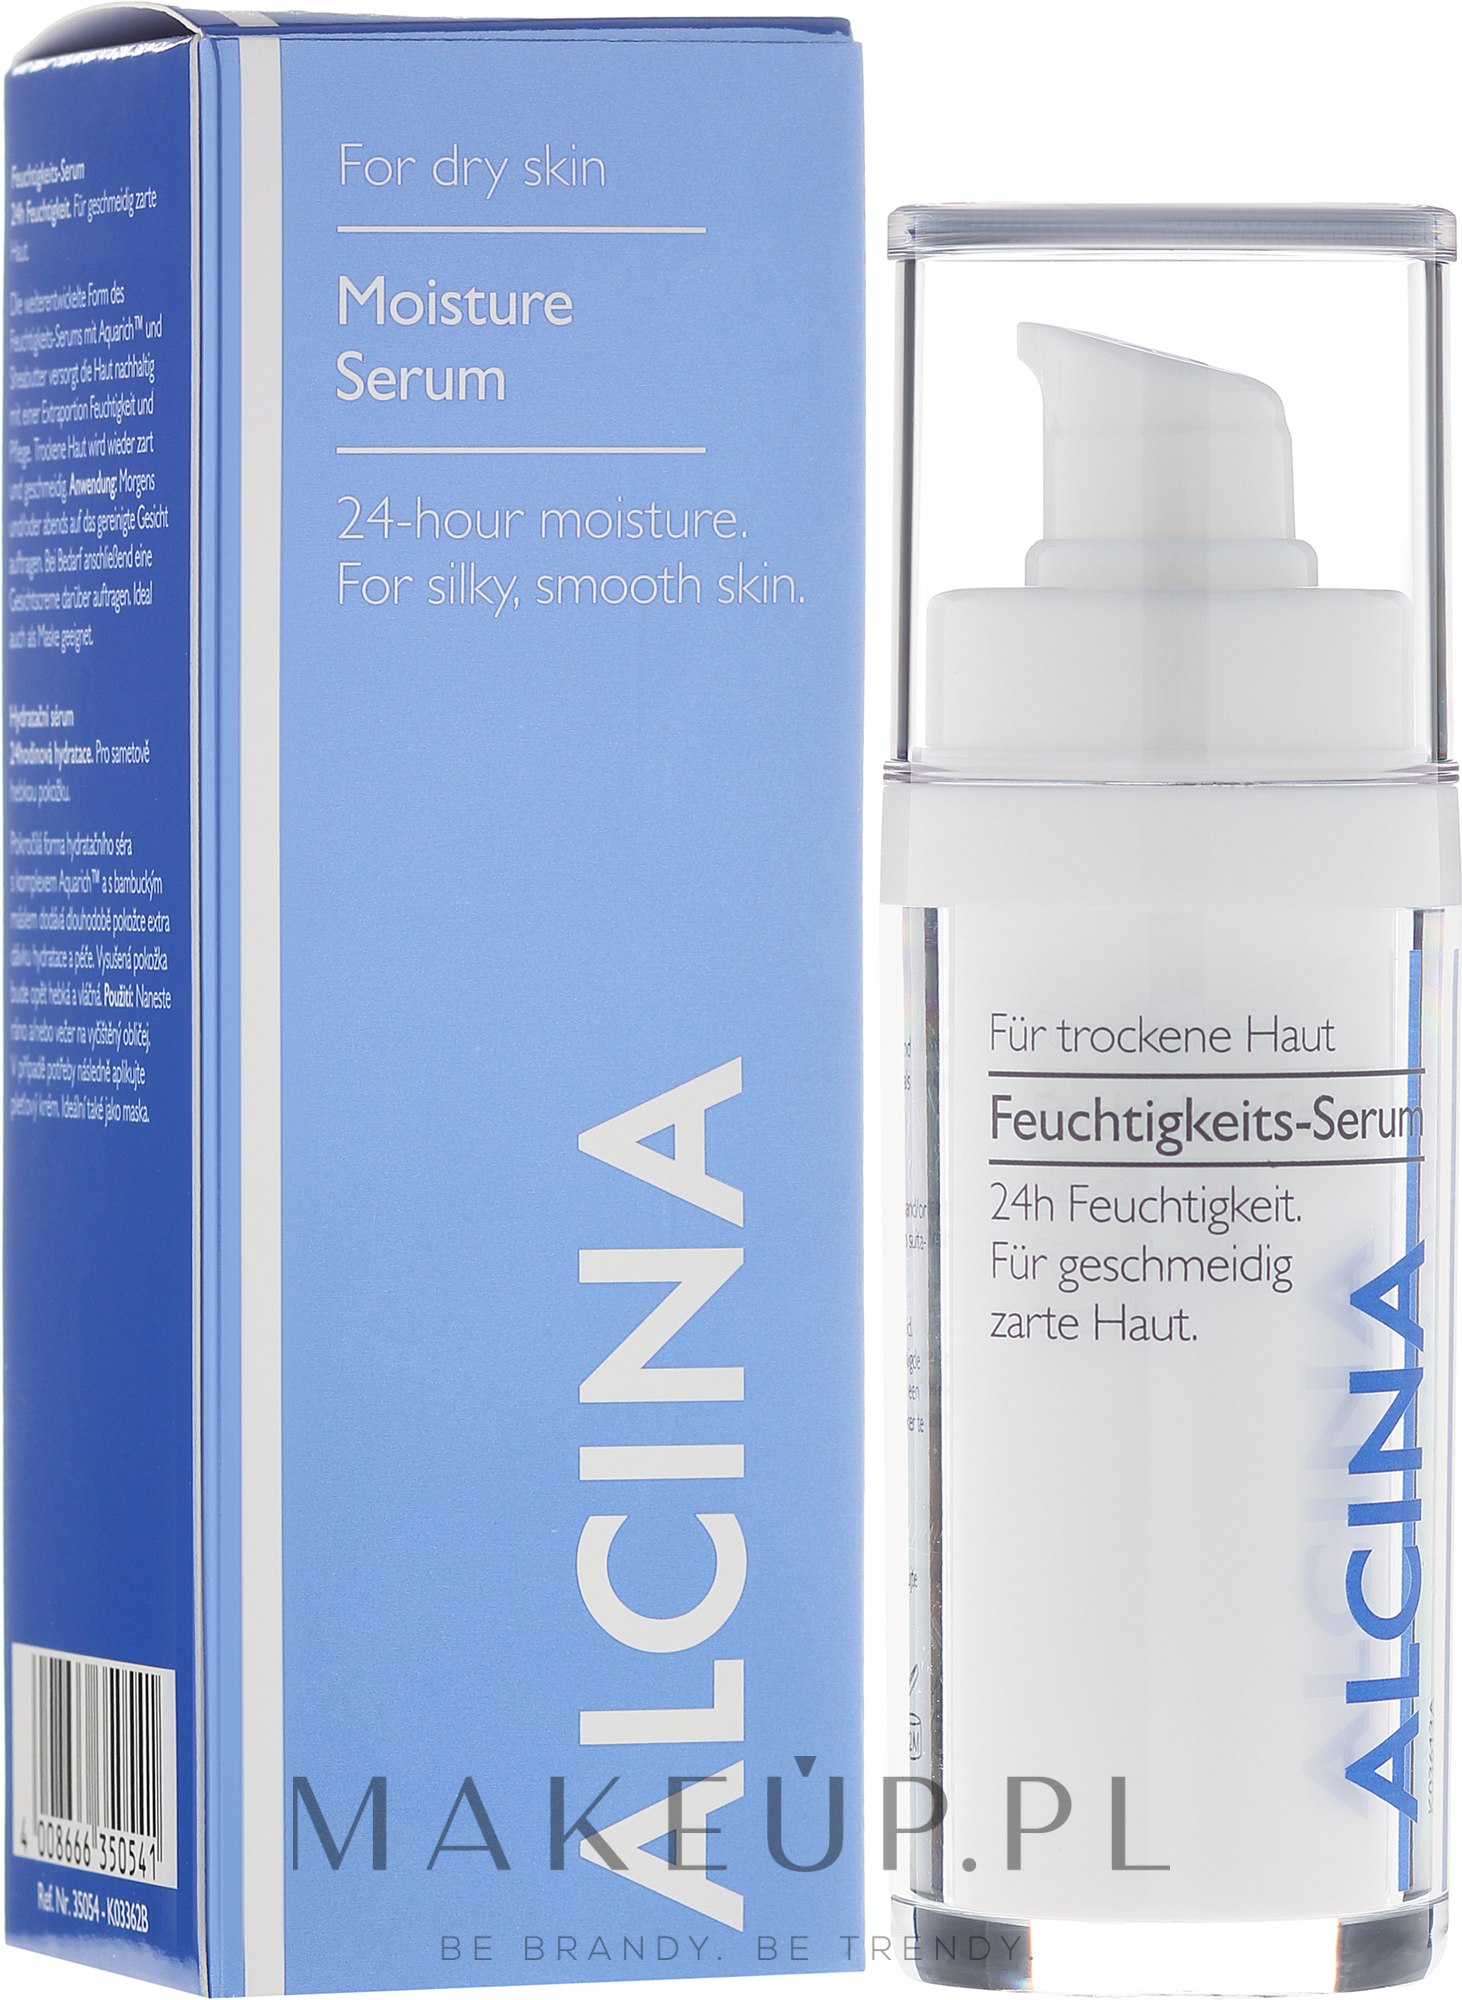 Nawilżające serum do cery suchej - Alcina Professional Moisture Serum — Zdjęcie 30 ml